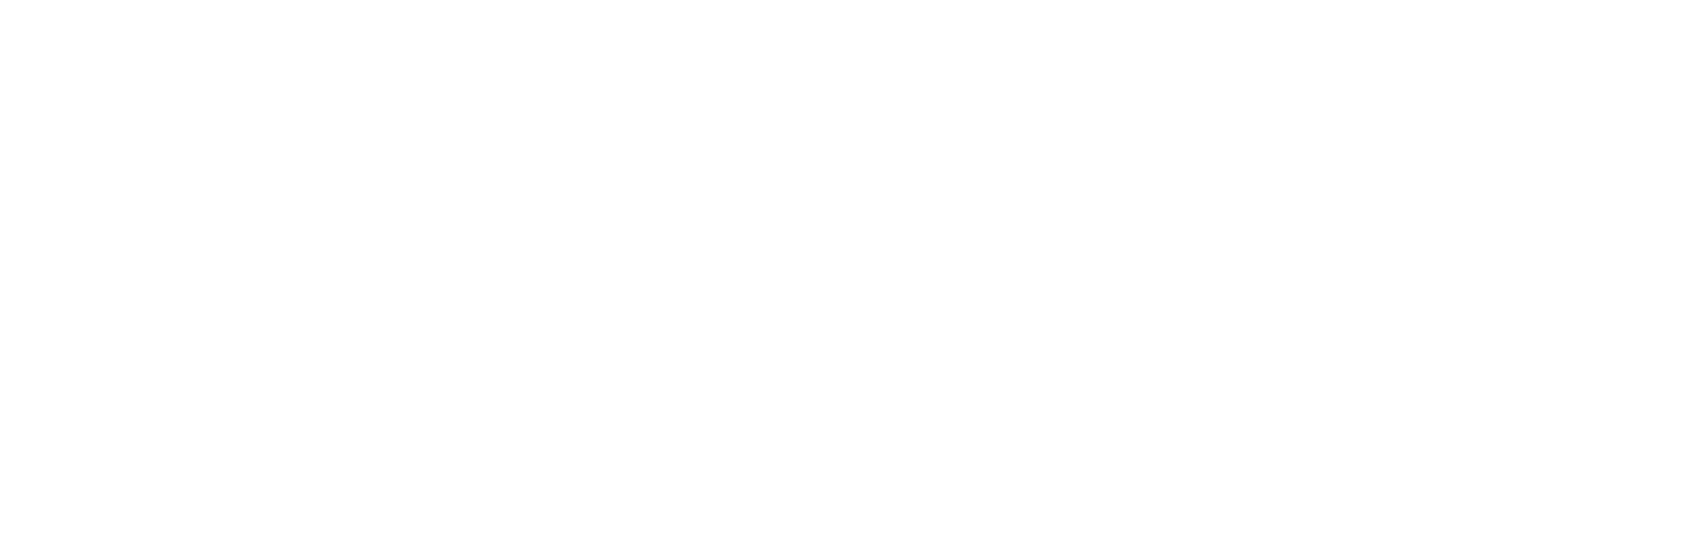 Kenan Advantage Group, Inc.